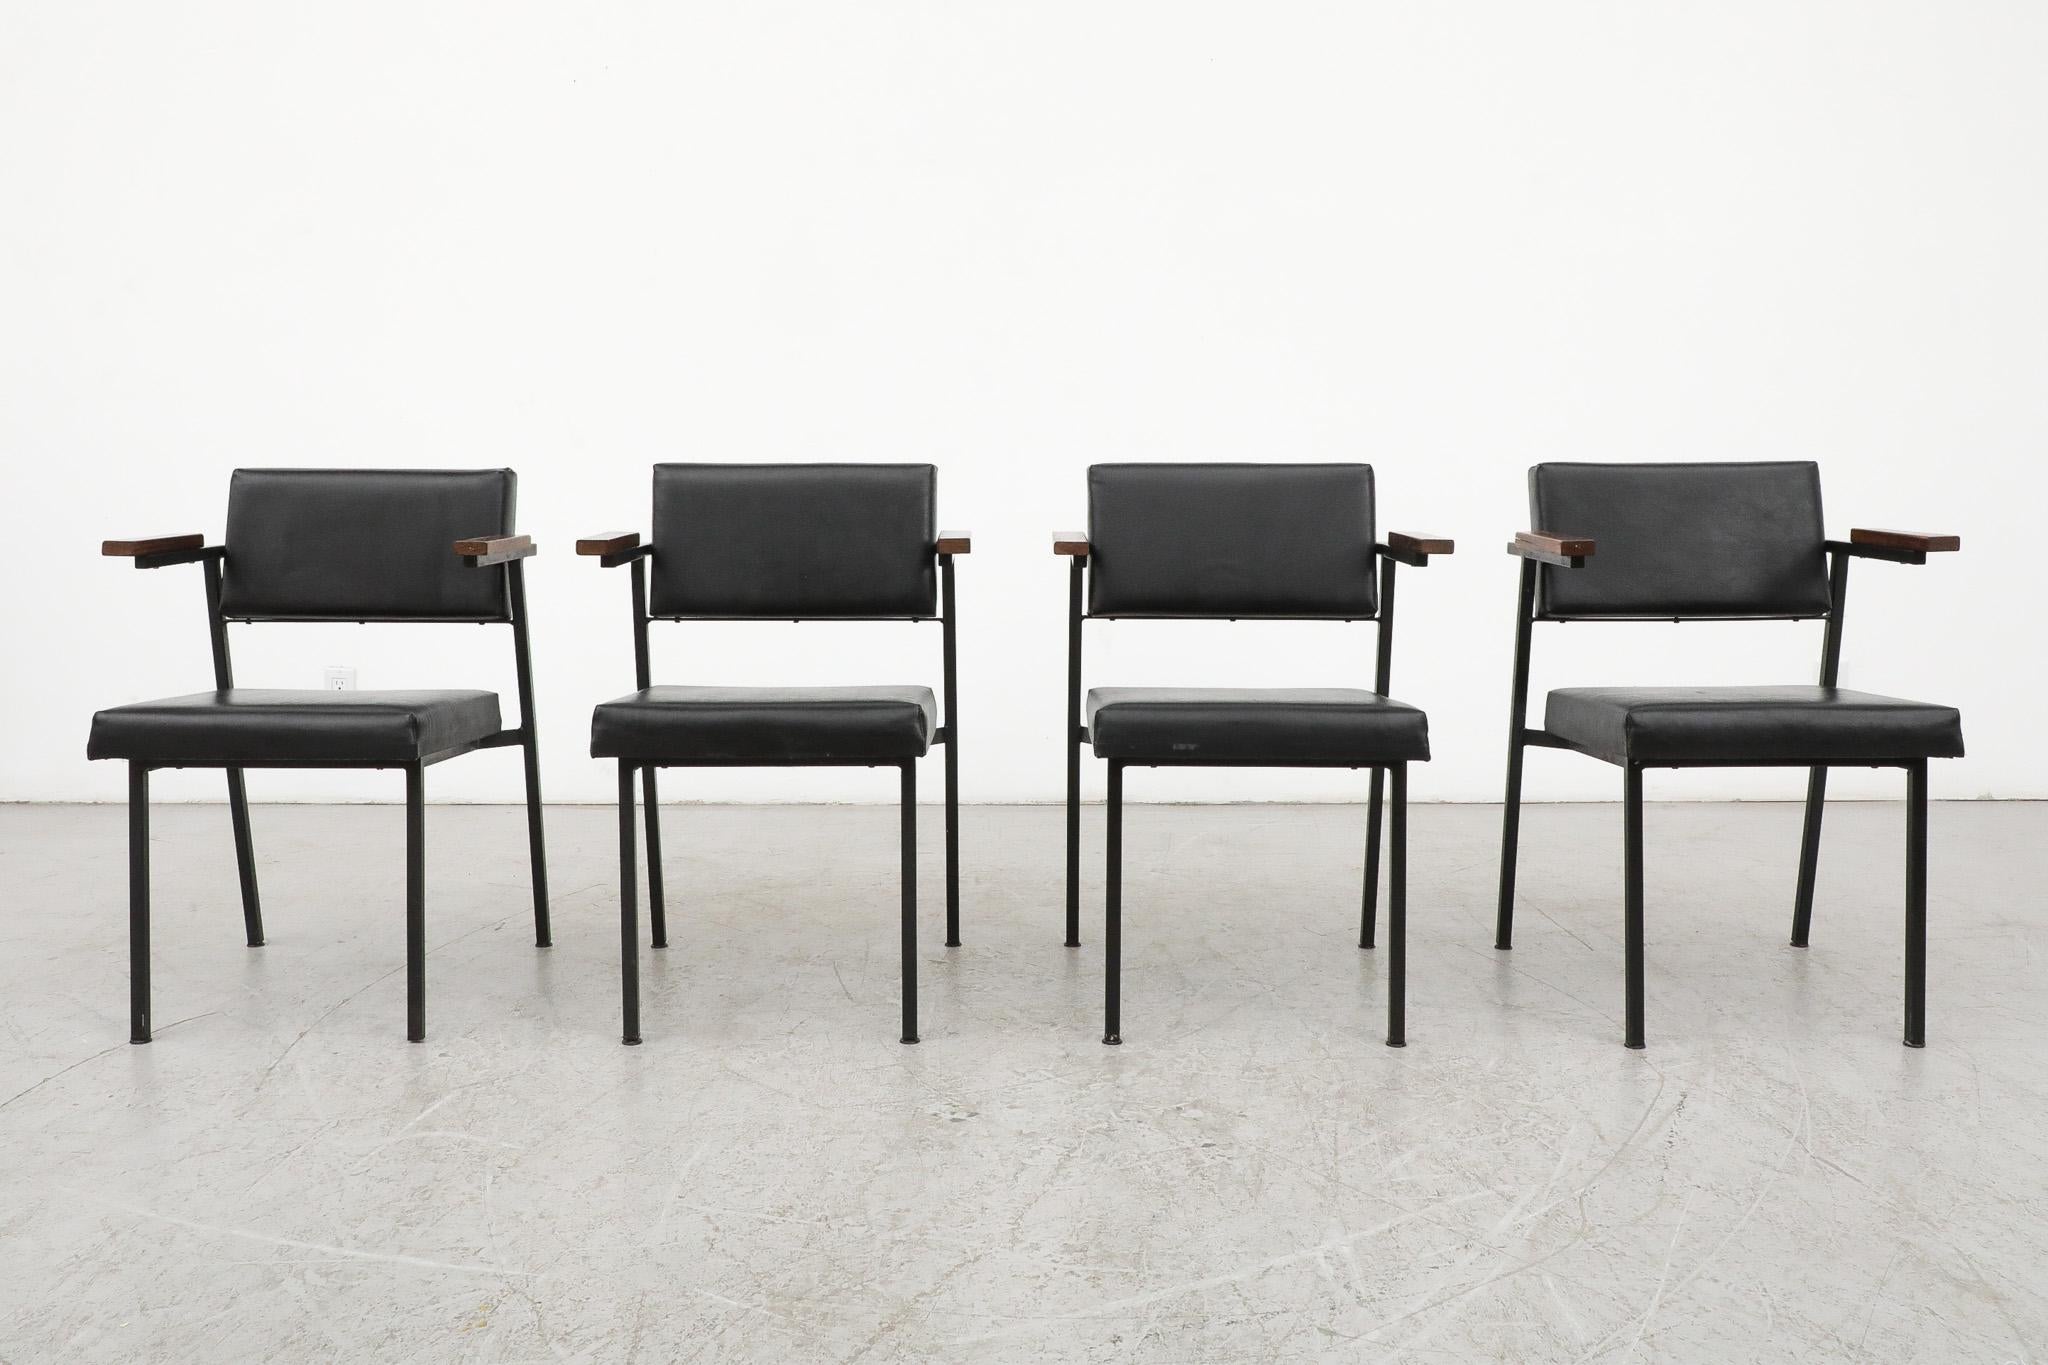 Ensemble de 4 chaises de salle à manger 'SE 69' par Martin Visser pour 't Spectrum 1959. Les chaises ont un cadre émaillé noir, des accoudoirs en wengé et un revêtement en skaï noir. Visser, designer par excellence du mouvement néerlandais